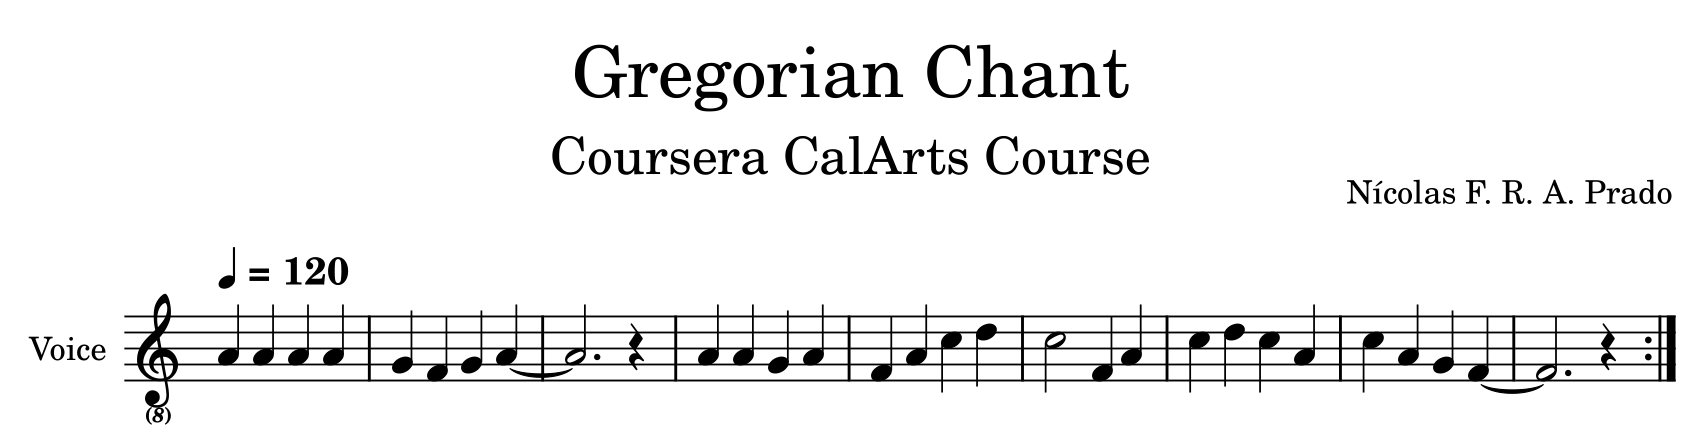 Partitura da melodia de canto gregoriano